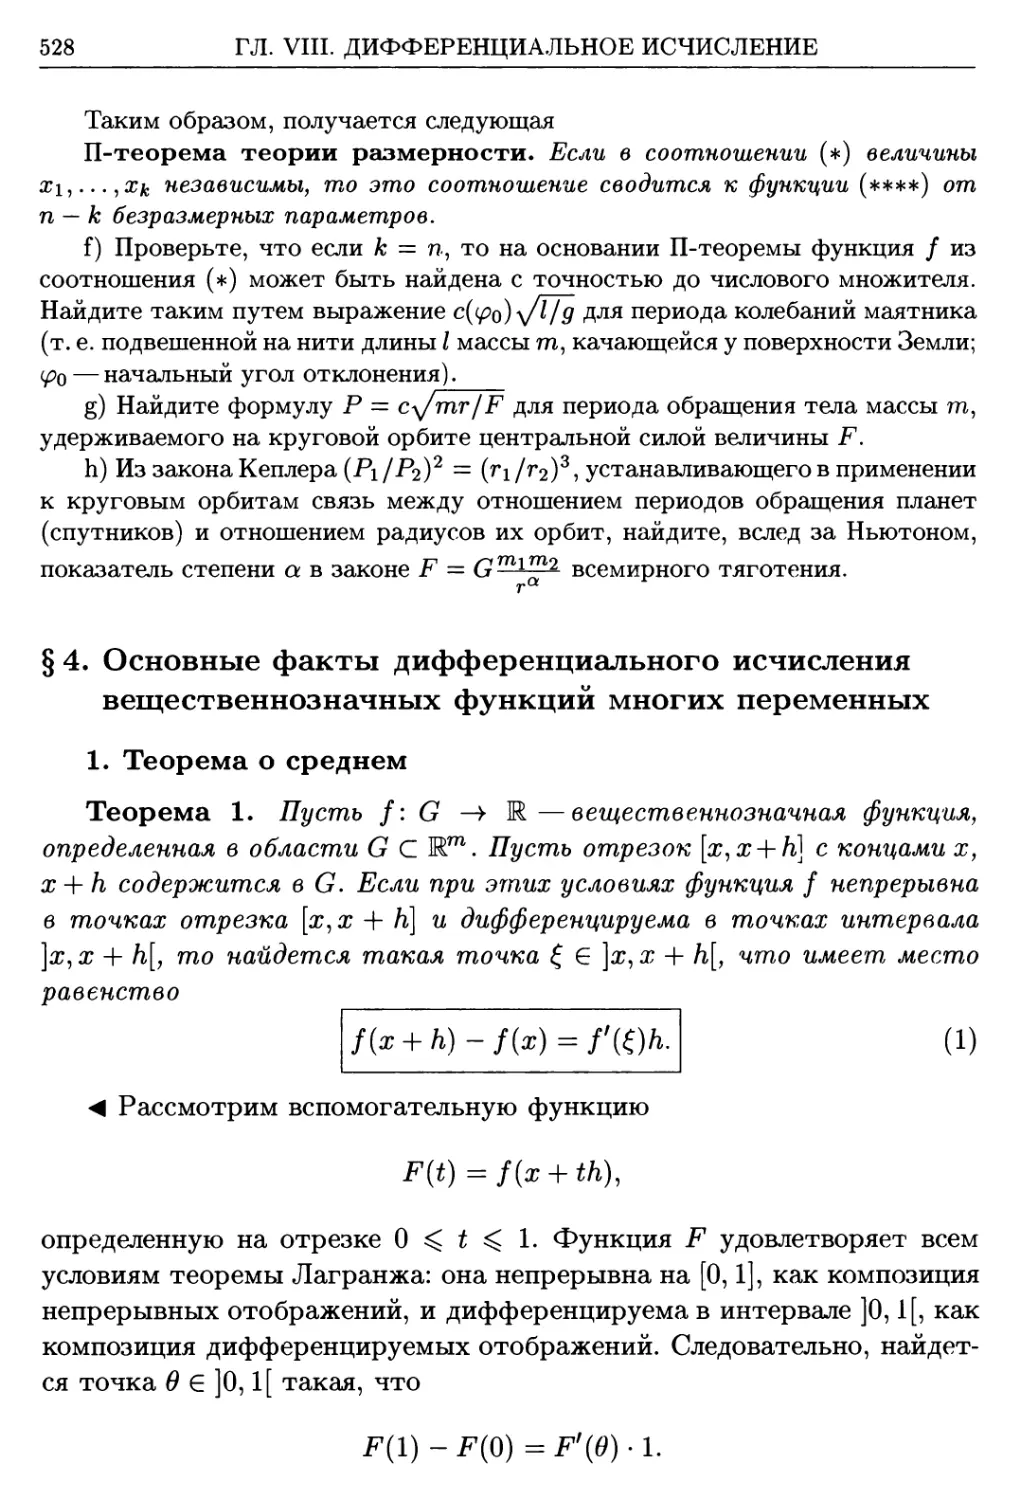 §4. Основные факты дифференциального исчисления вещественнозначных функций многих переменных